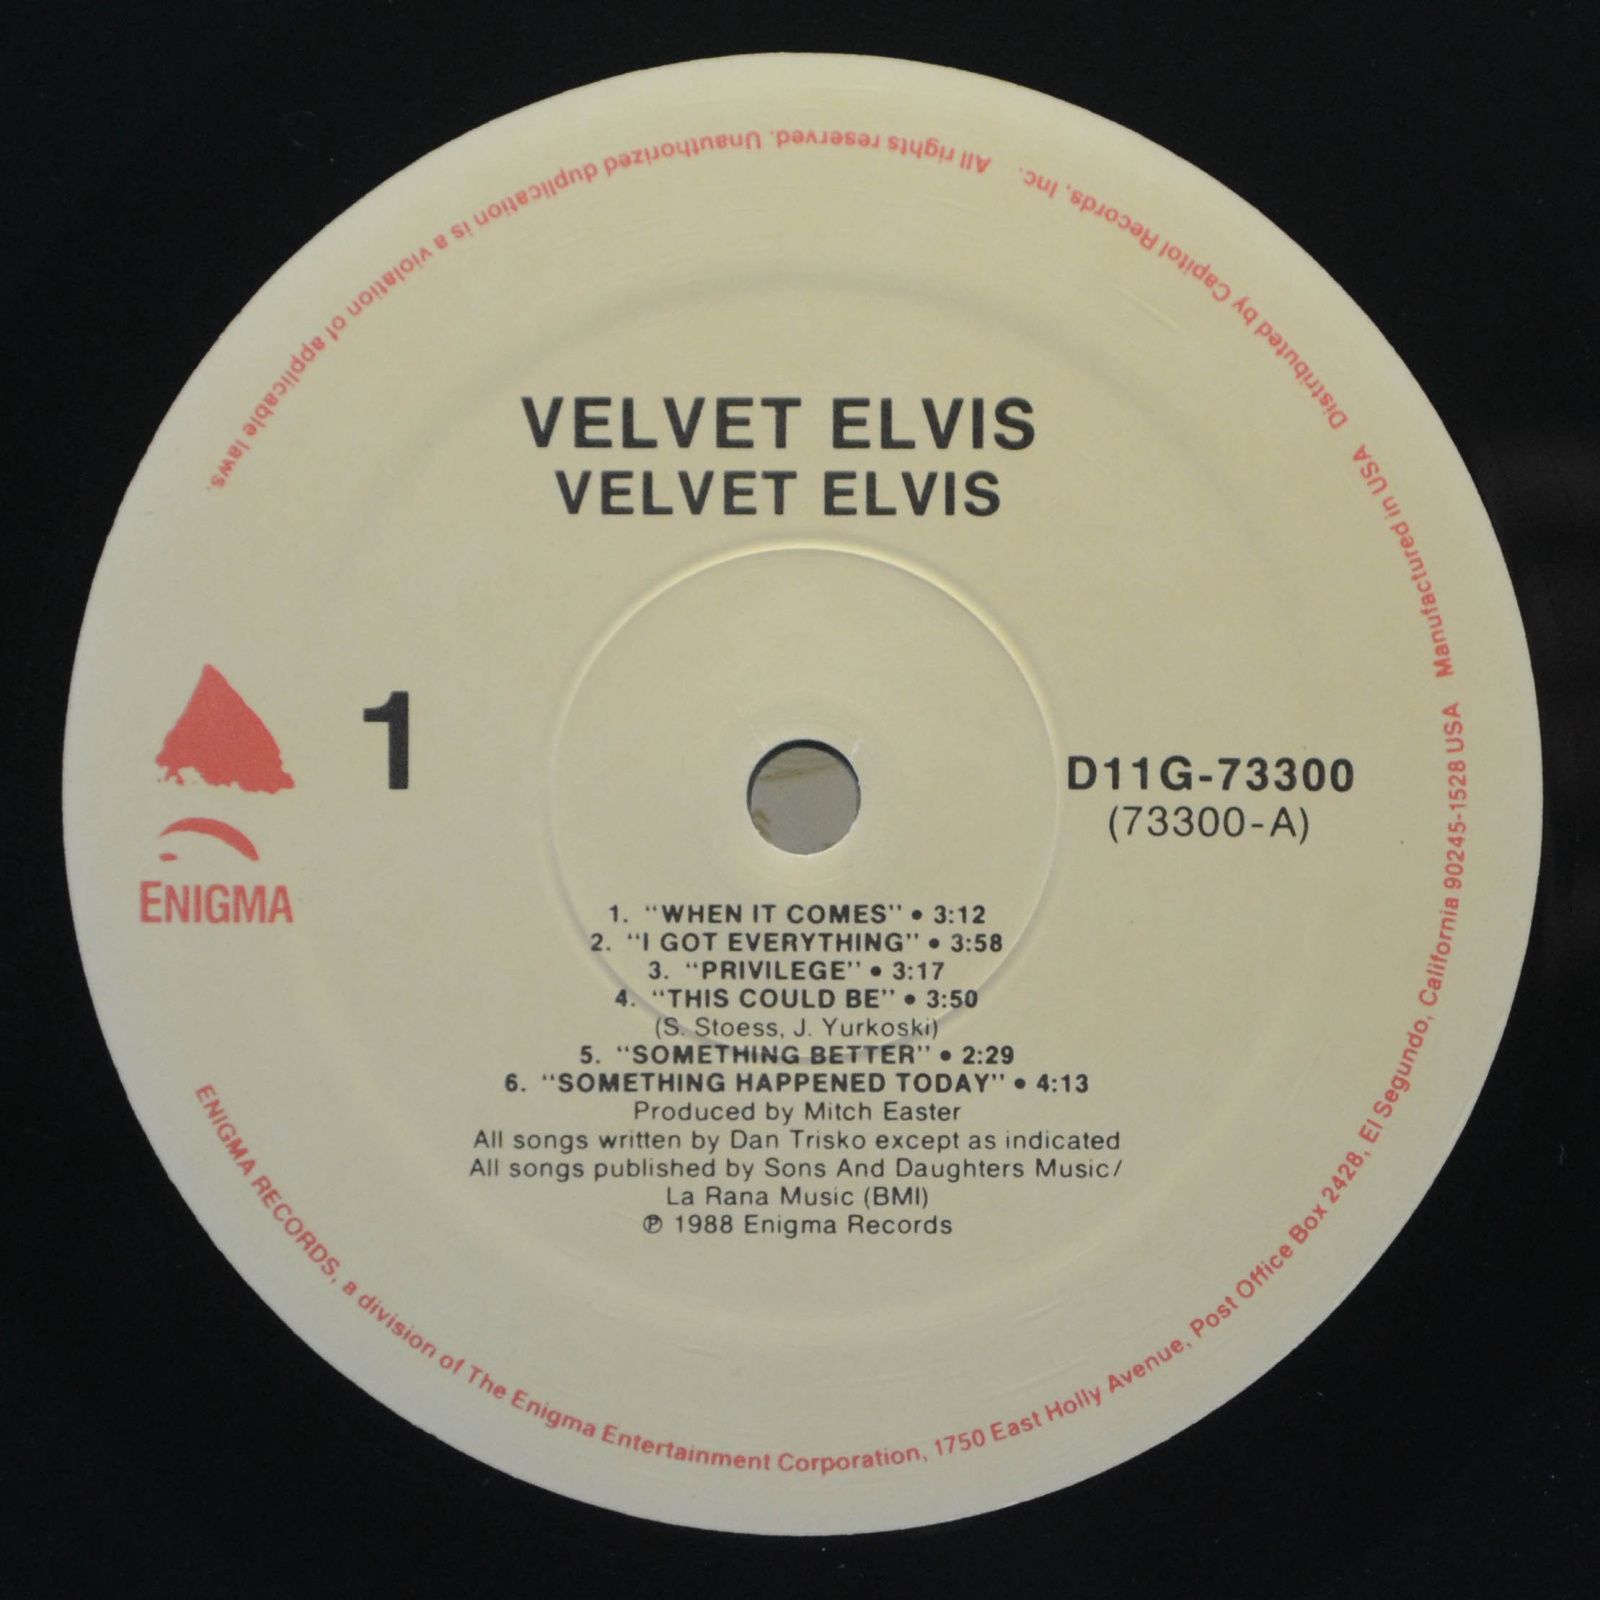 Velvet Elvis — Velvet Elvis, 1988